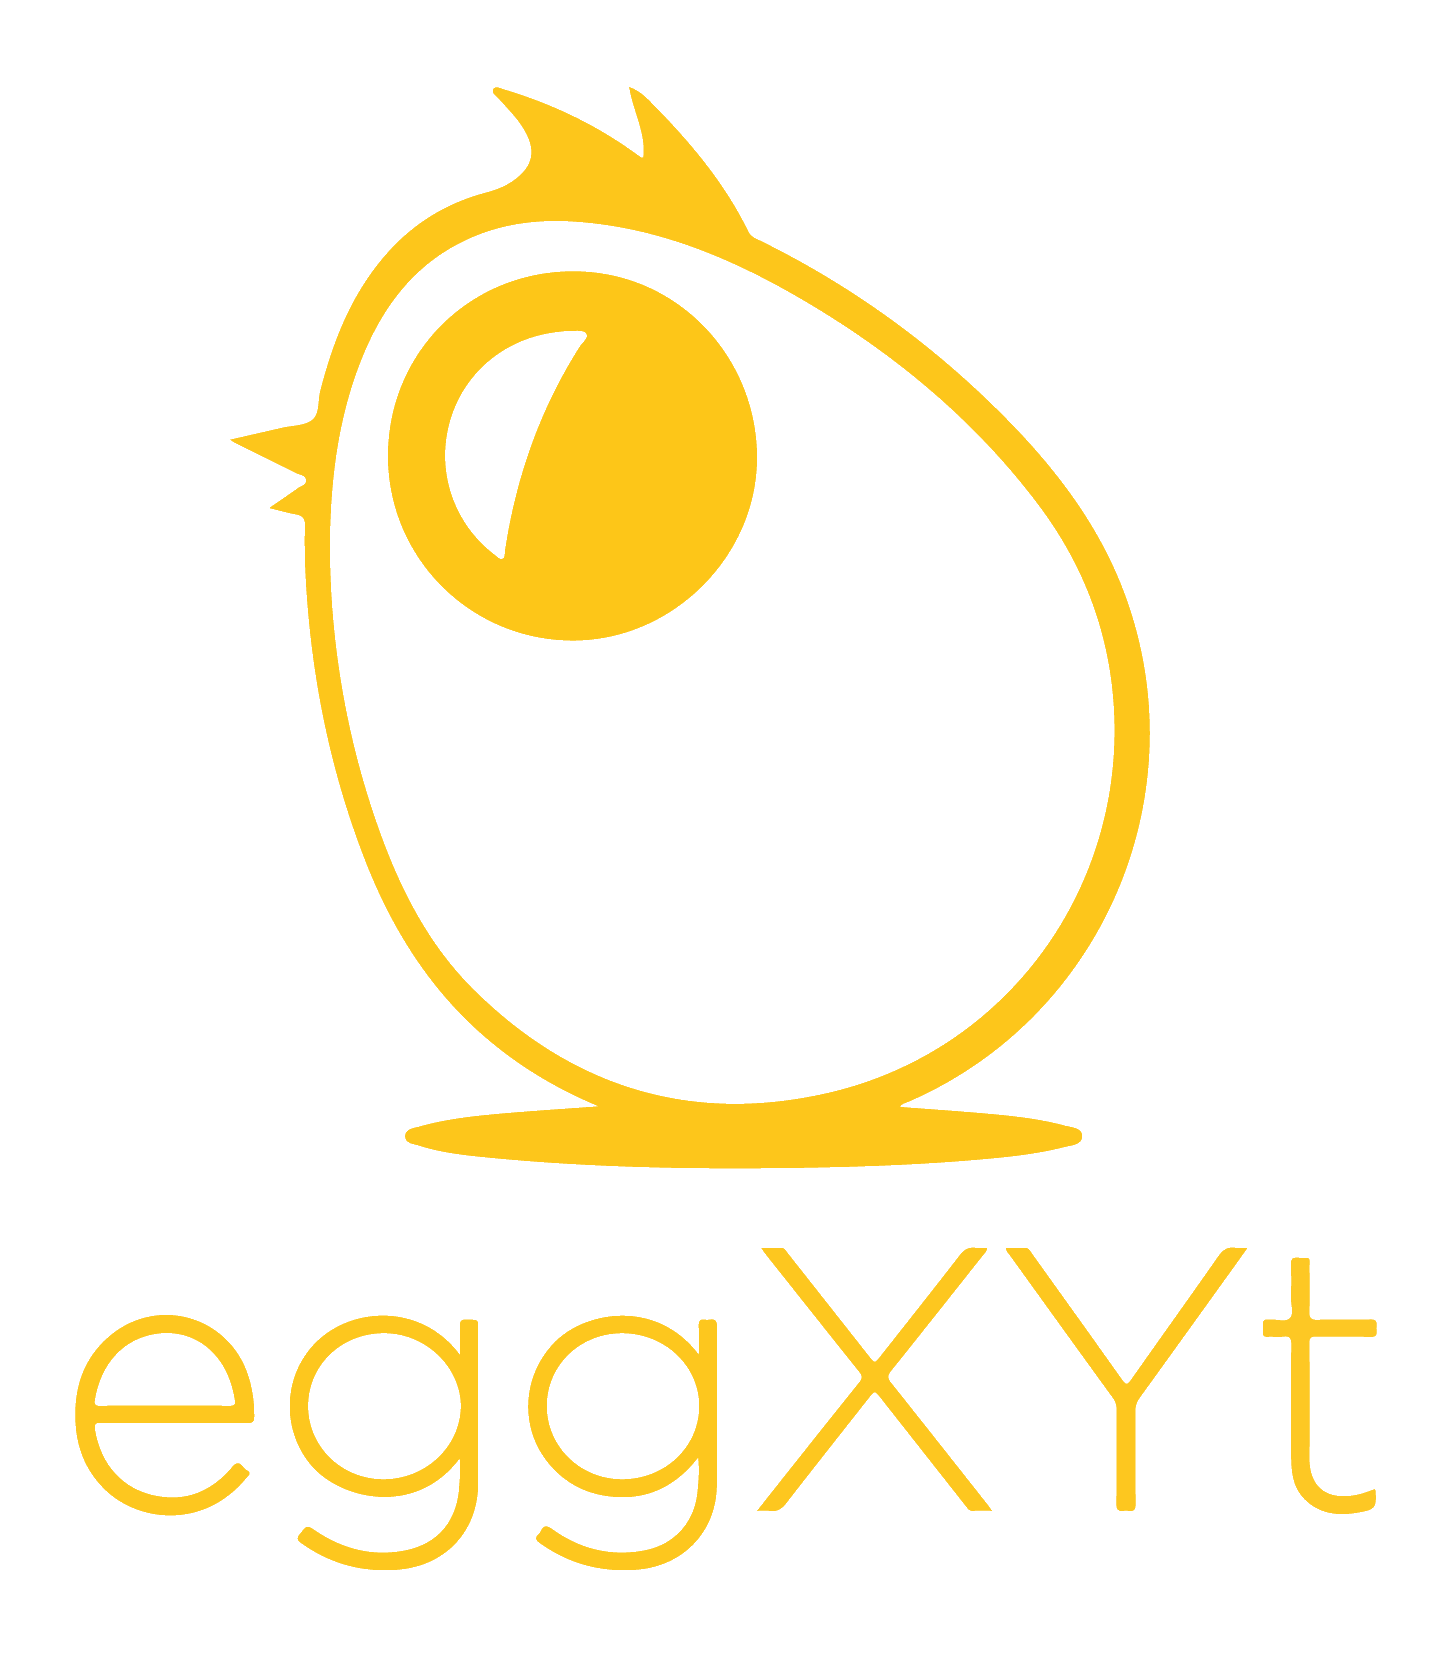 eggxyt.png